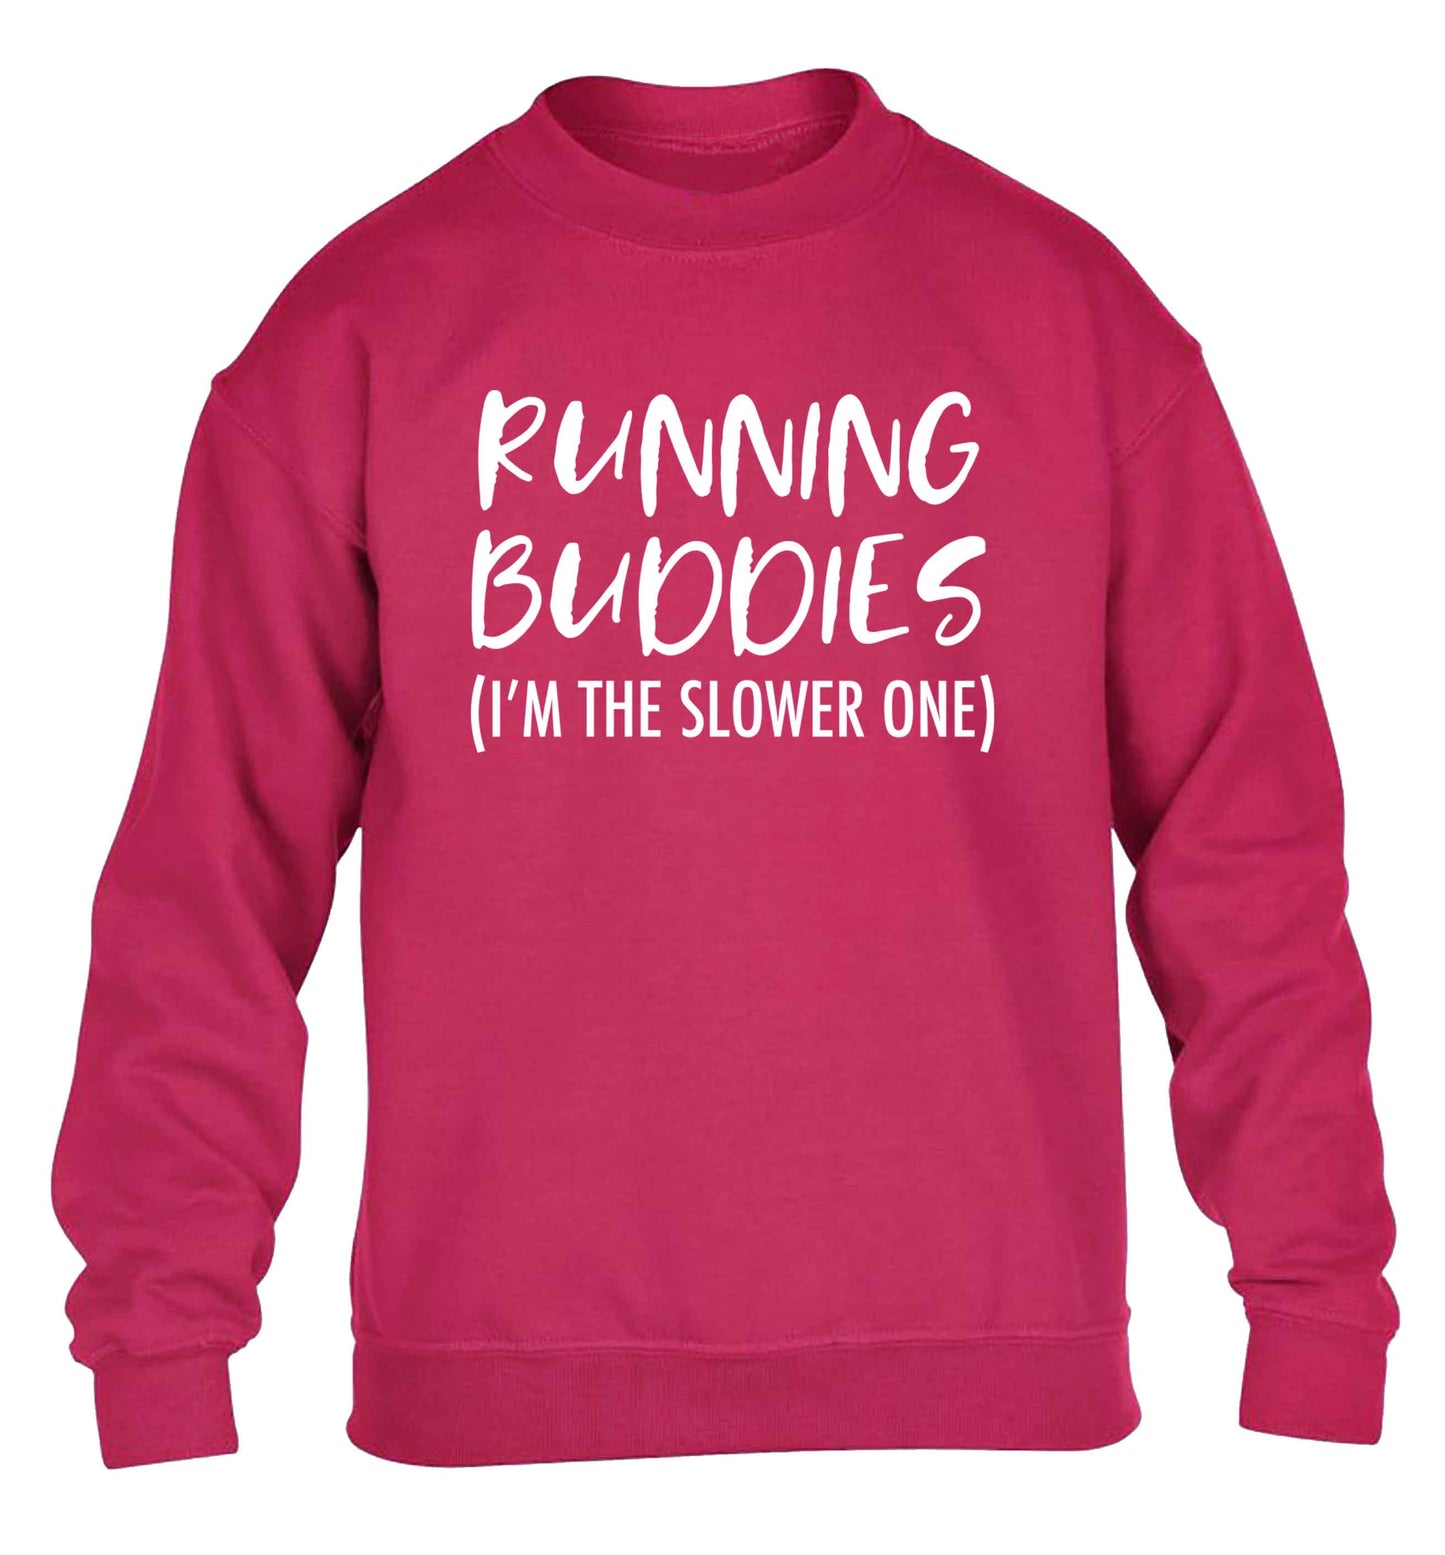 Running buddies (I'm the slower one) children's pink sweater 12-13 Years